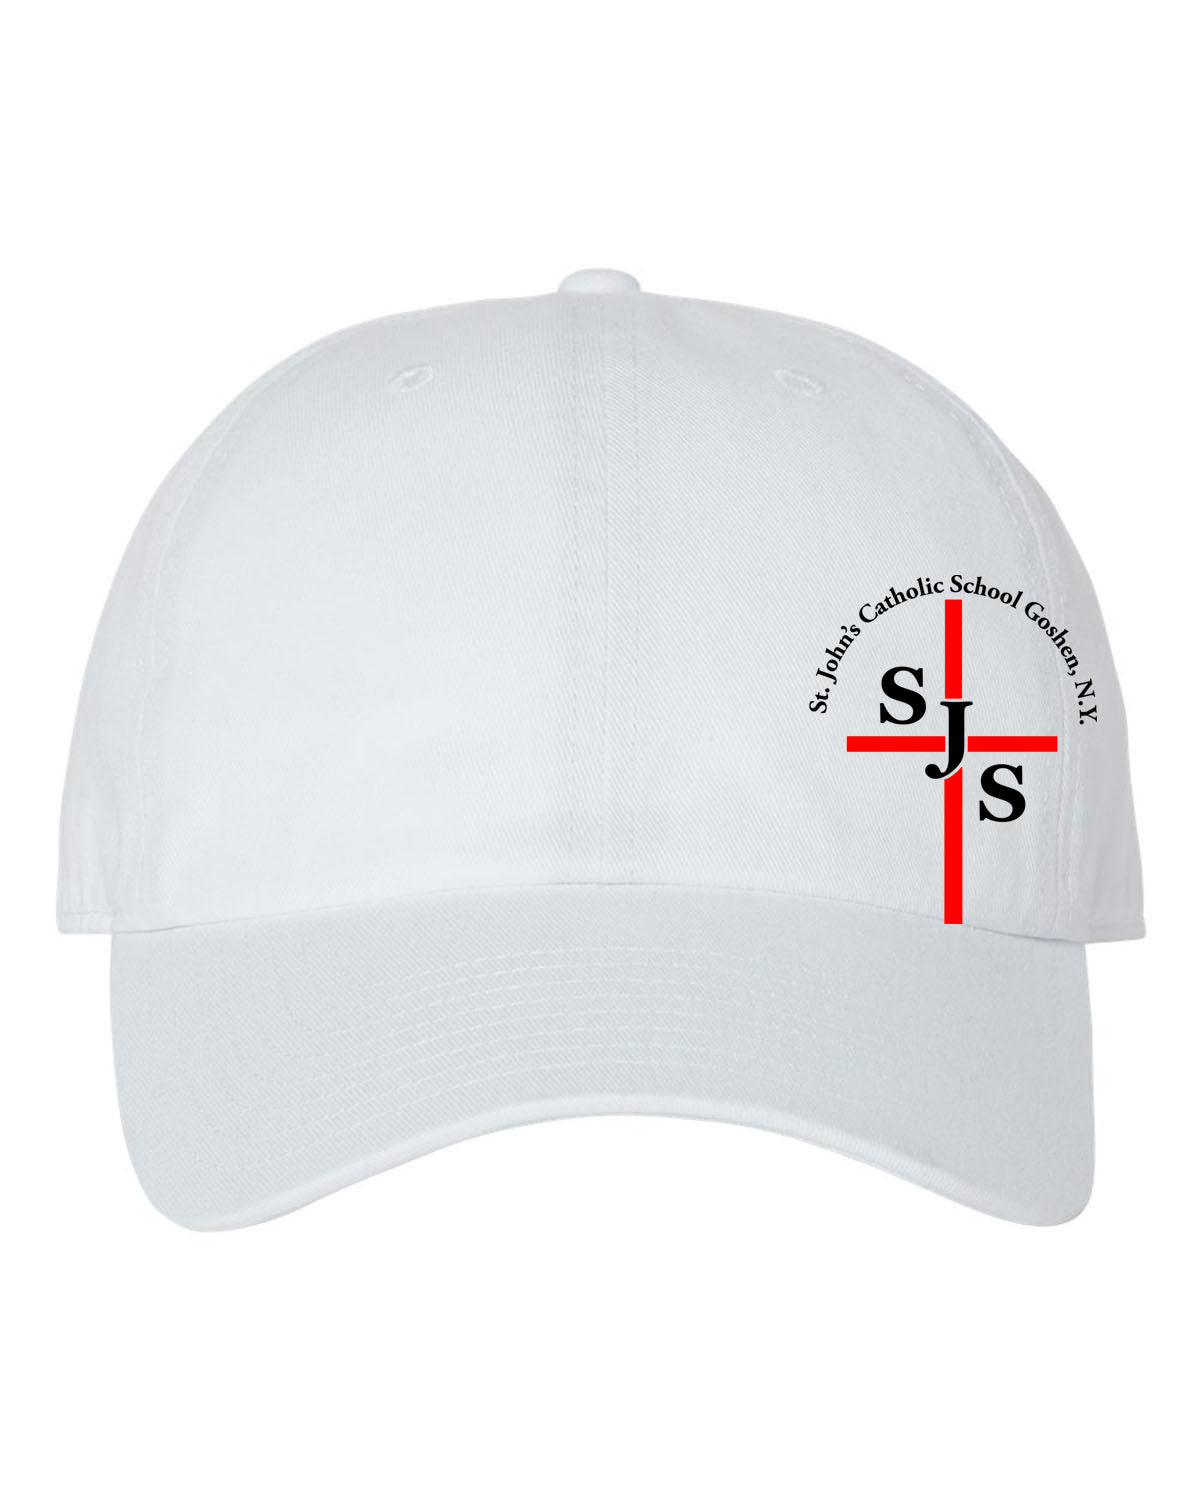 St. John's design 4 Trucker Hat